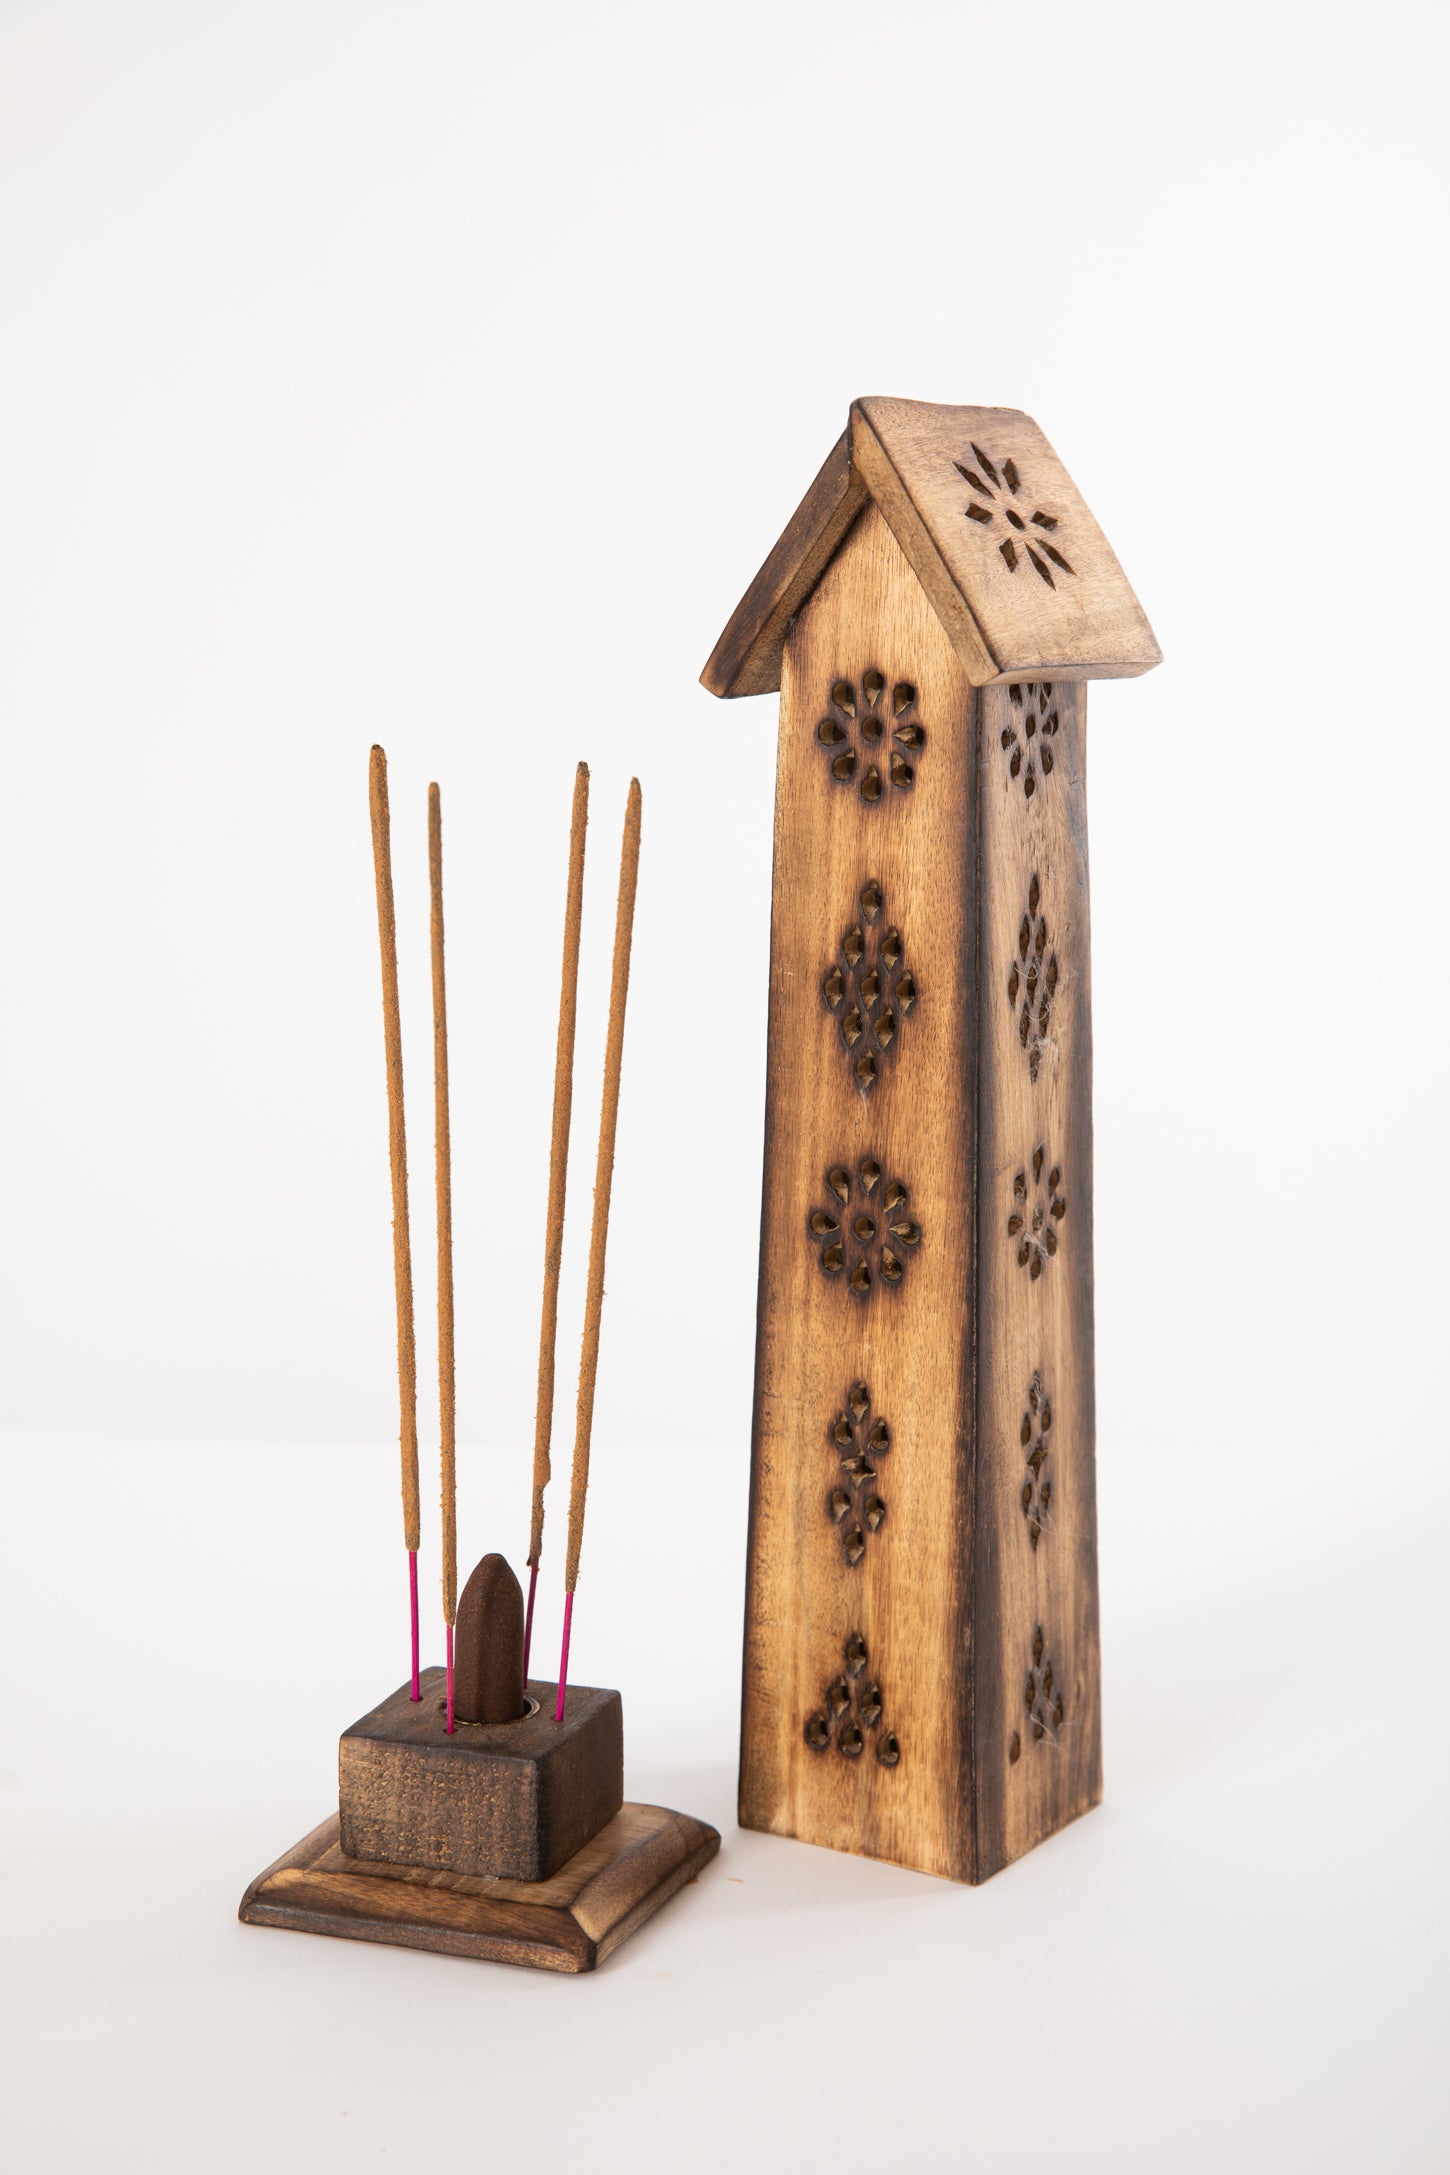 Tranquil Tower Carved Wooden Incense Burner